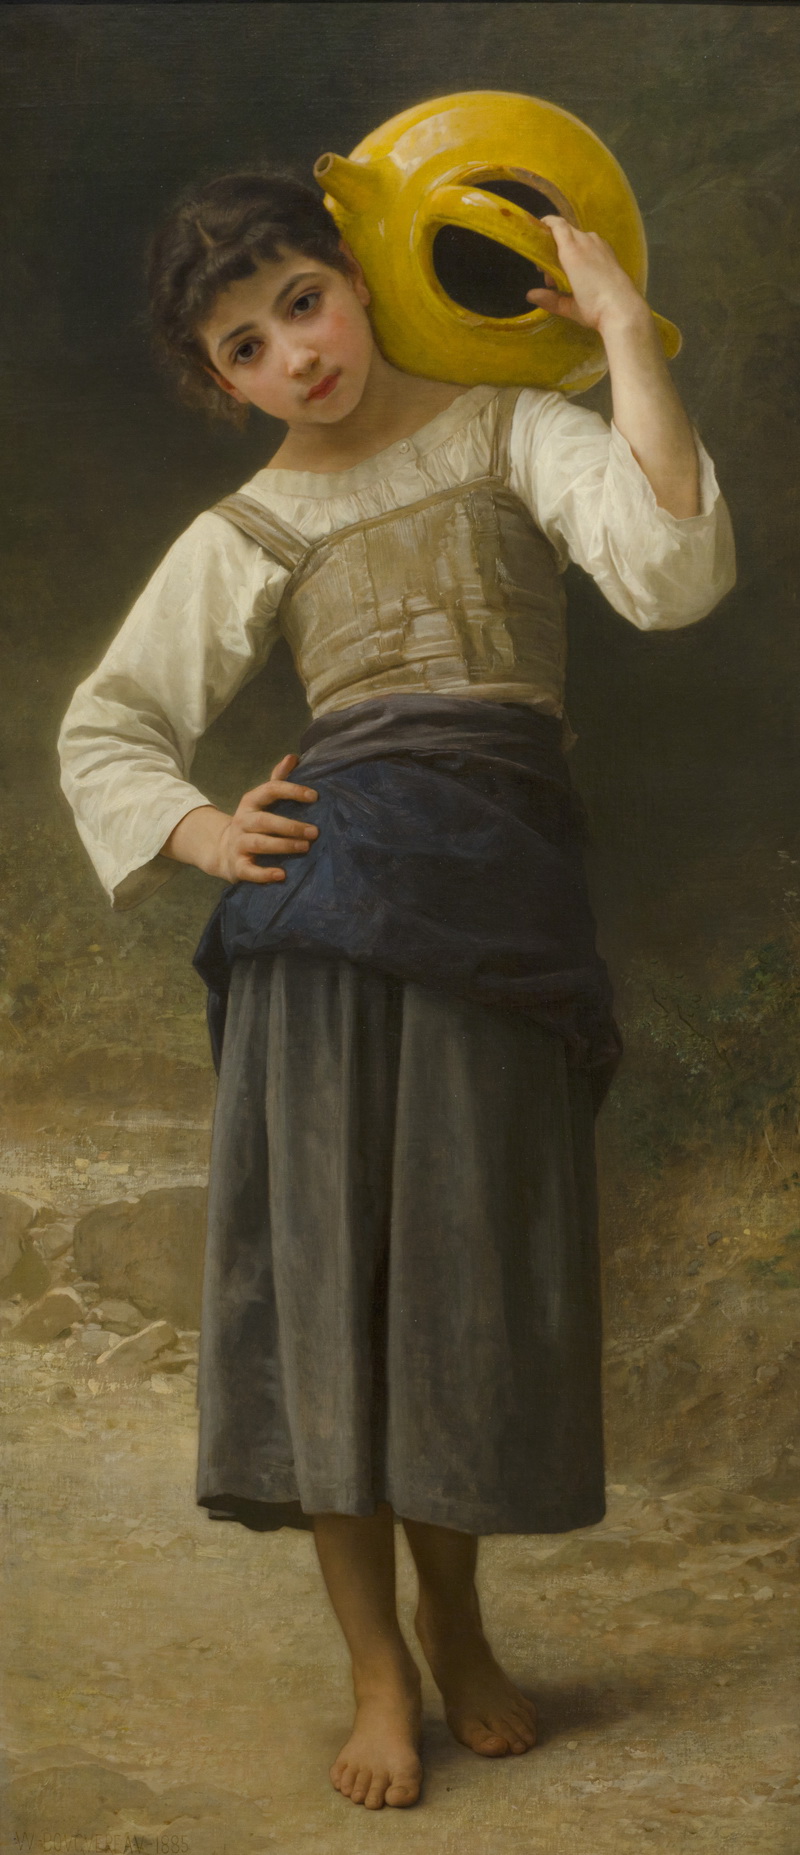 A014047《去喷泉路上的年轻女孩》法国画家威廉·布格罗高清作品 油画-第1张